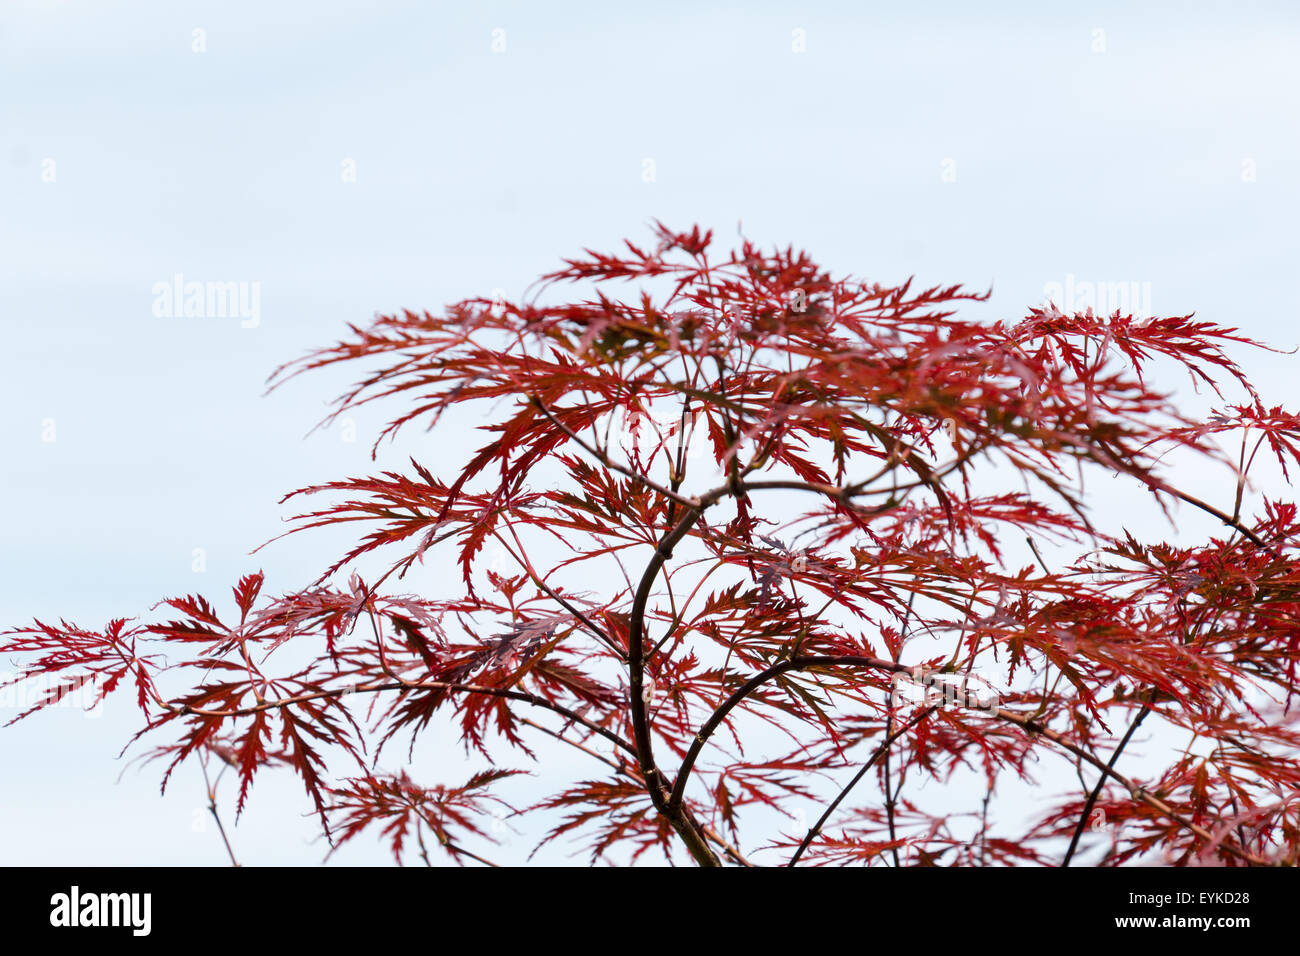 Weinrote Blätter des Baumes japanischer Ahorn, Acer Palmatum Dissectum Atropurpureum, frei gelassen Stockfoto